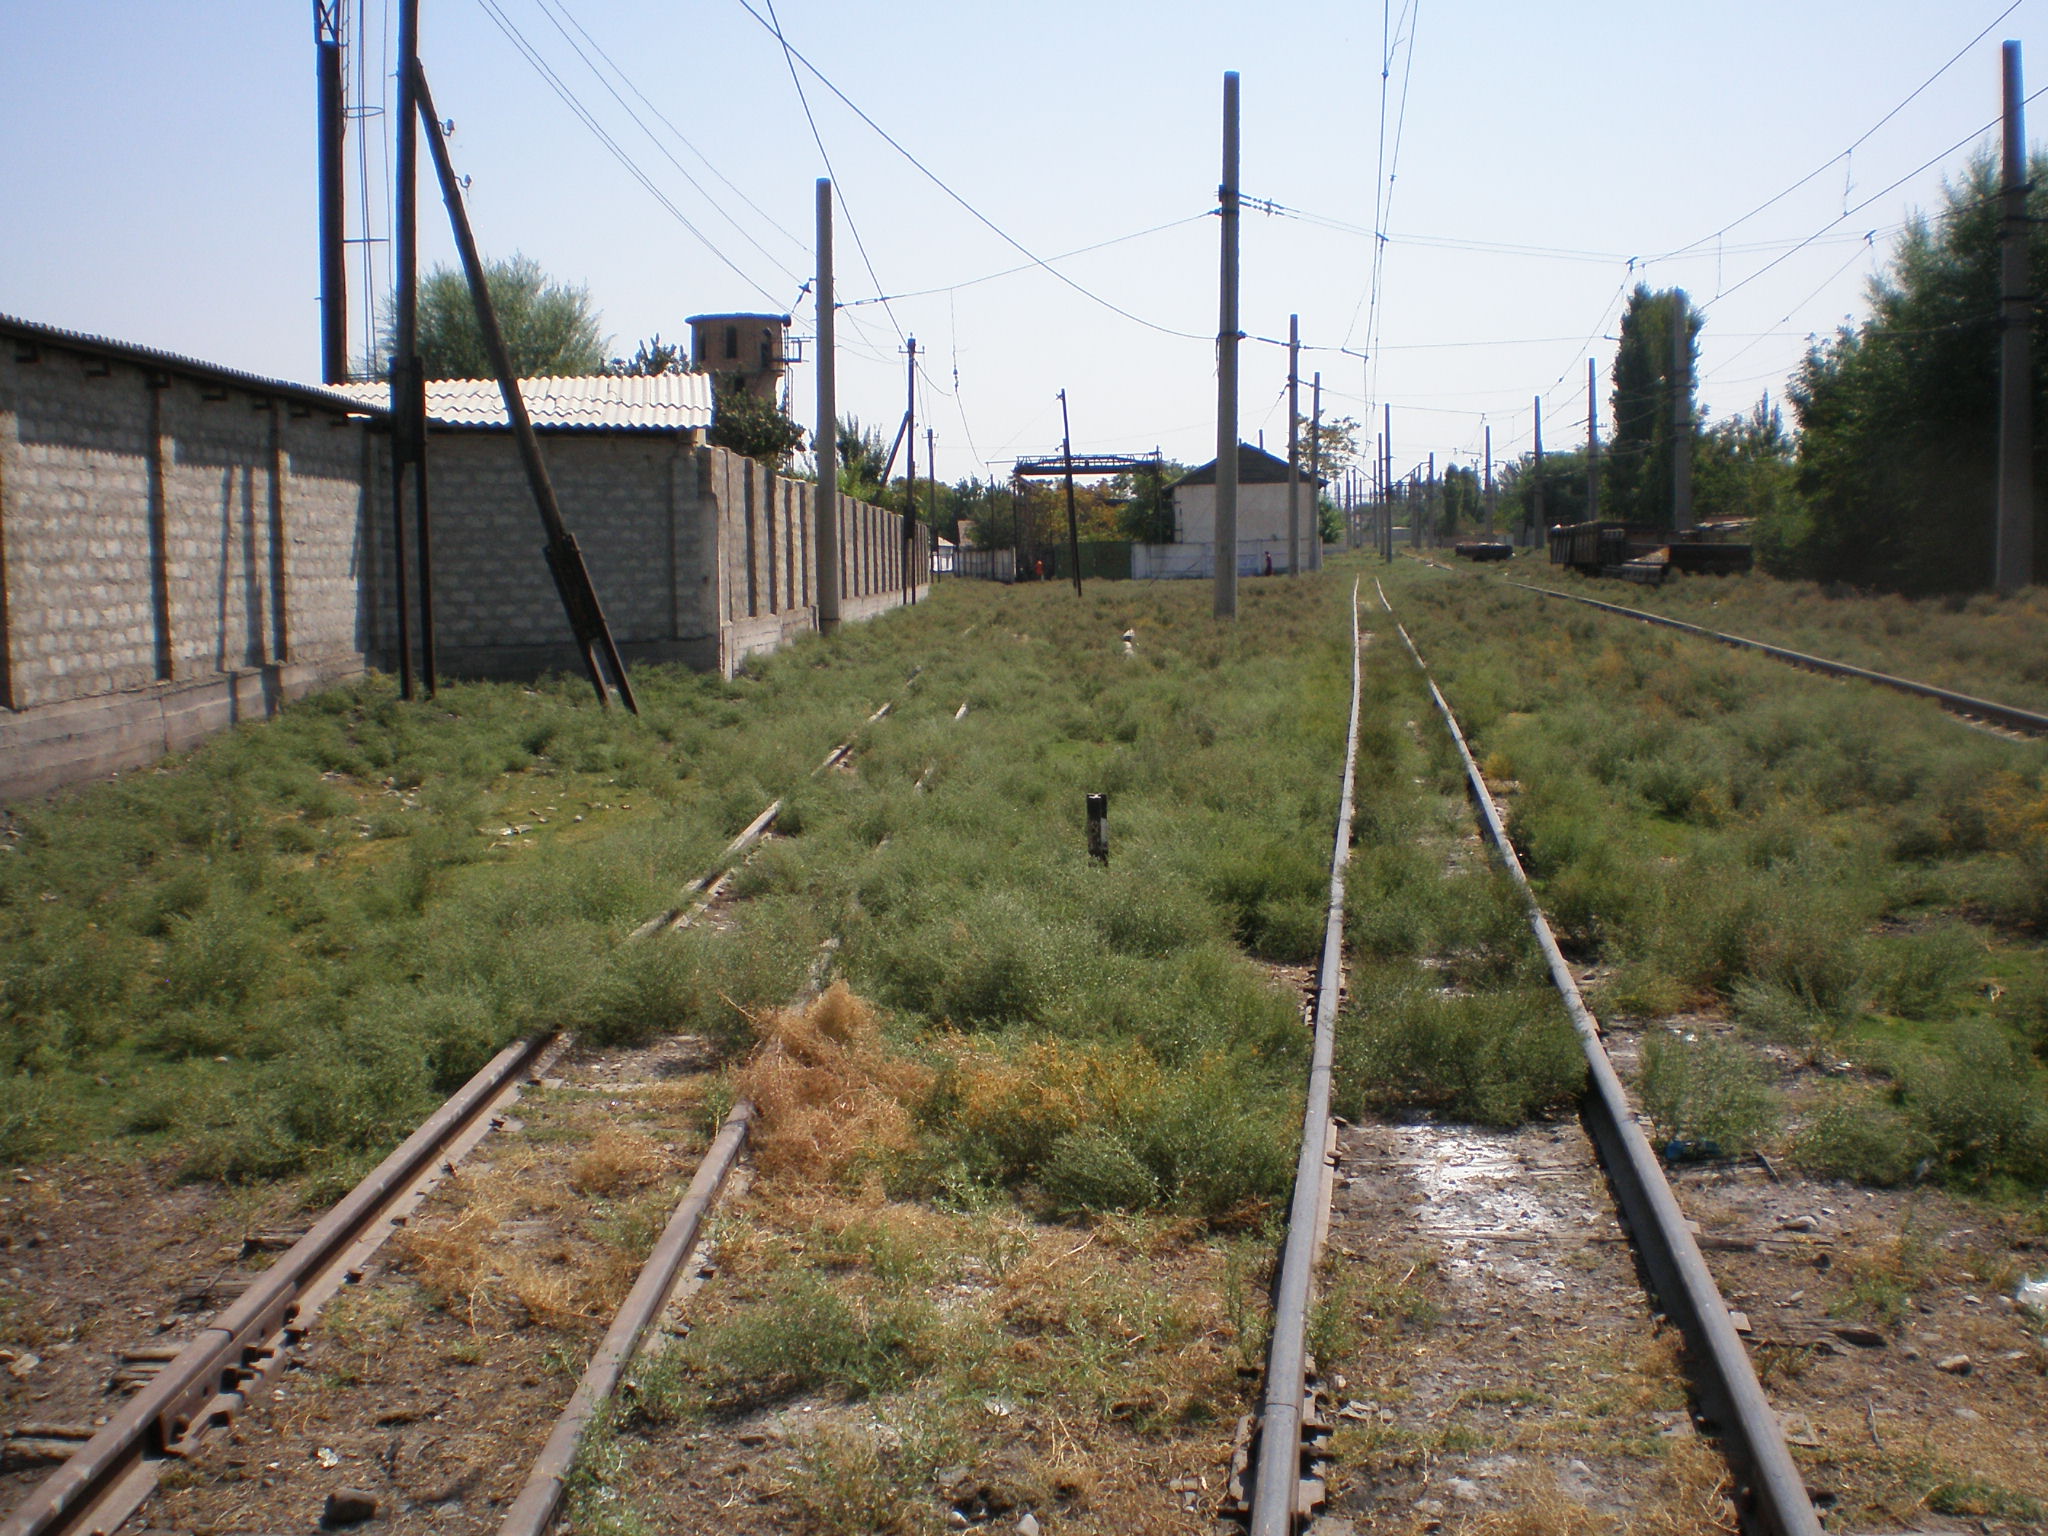 Сулюктинская узкоколейная железная дорога  —  фотографии, сделанные в 2008 году (часть 6)